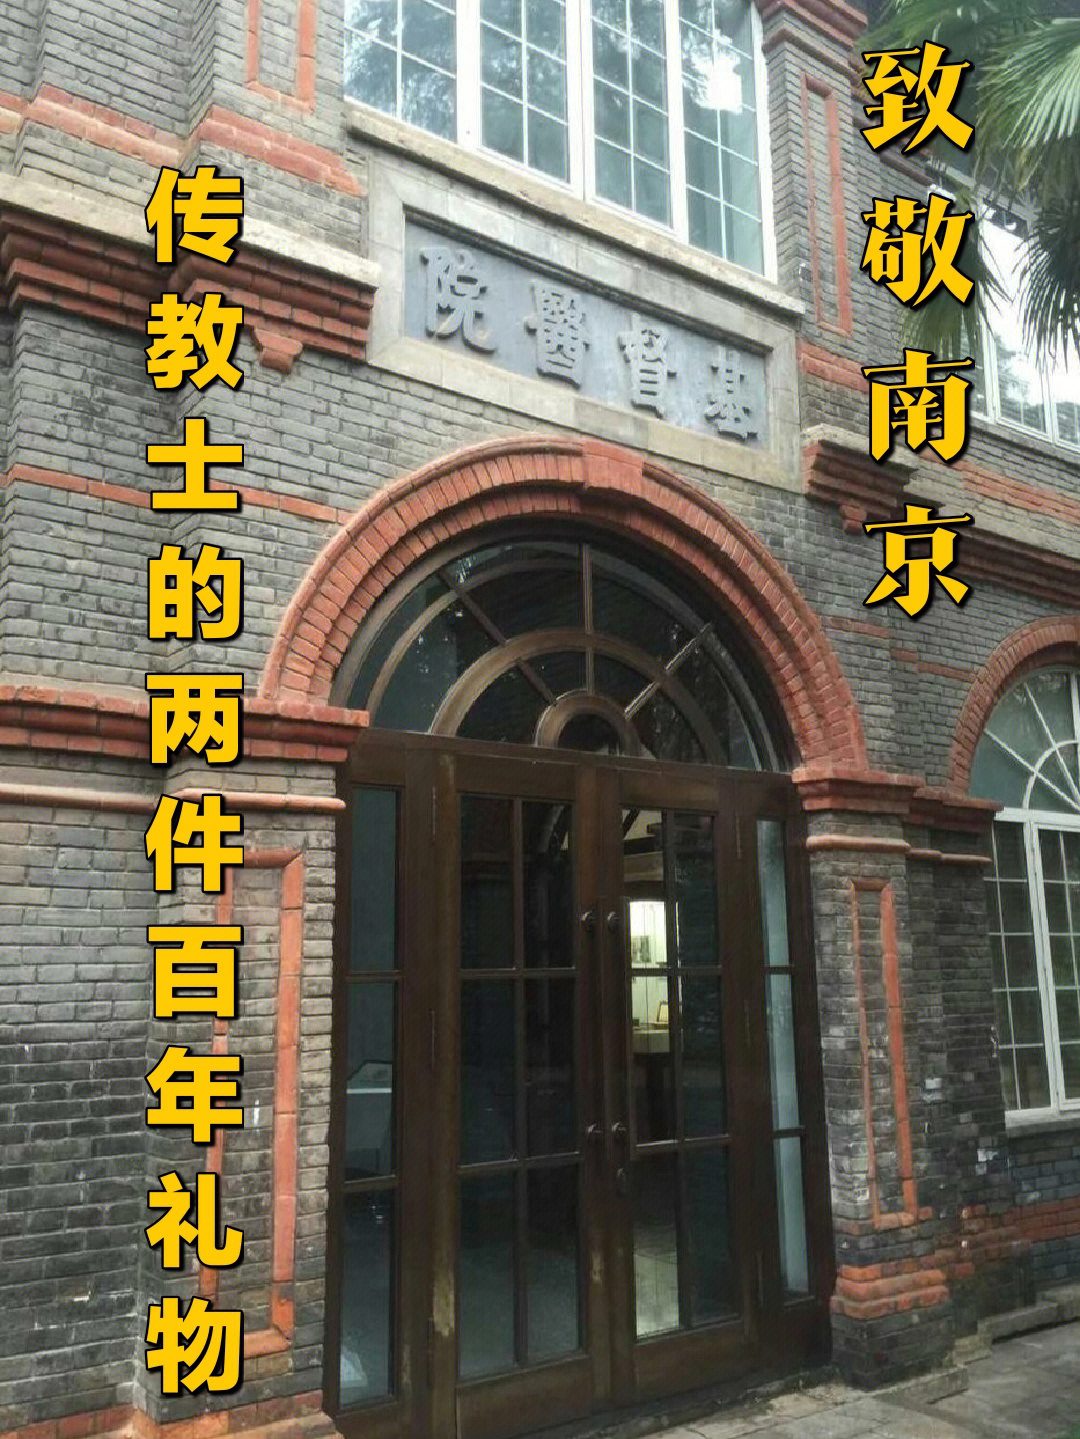 南京低碳打卡中华中学初中部鼓楼医院